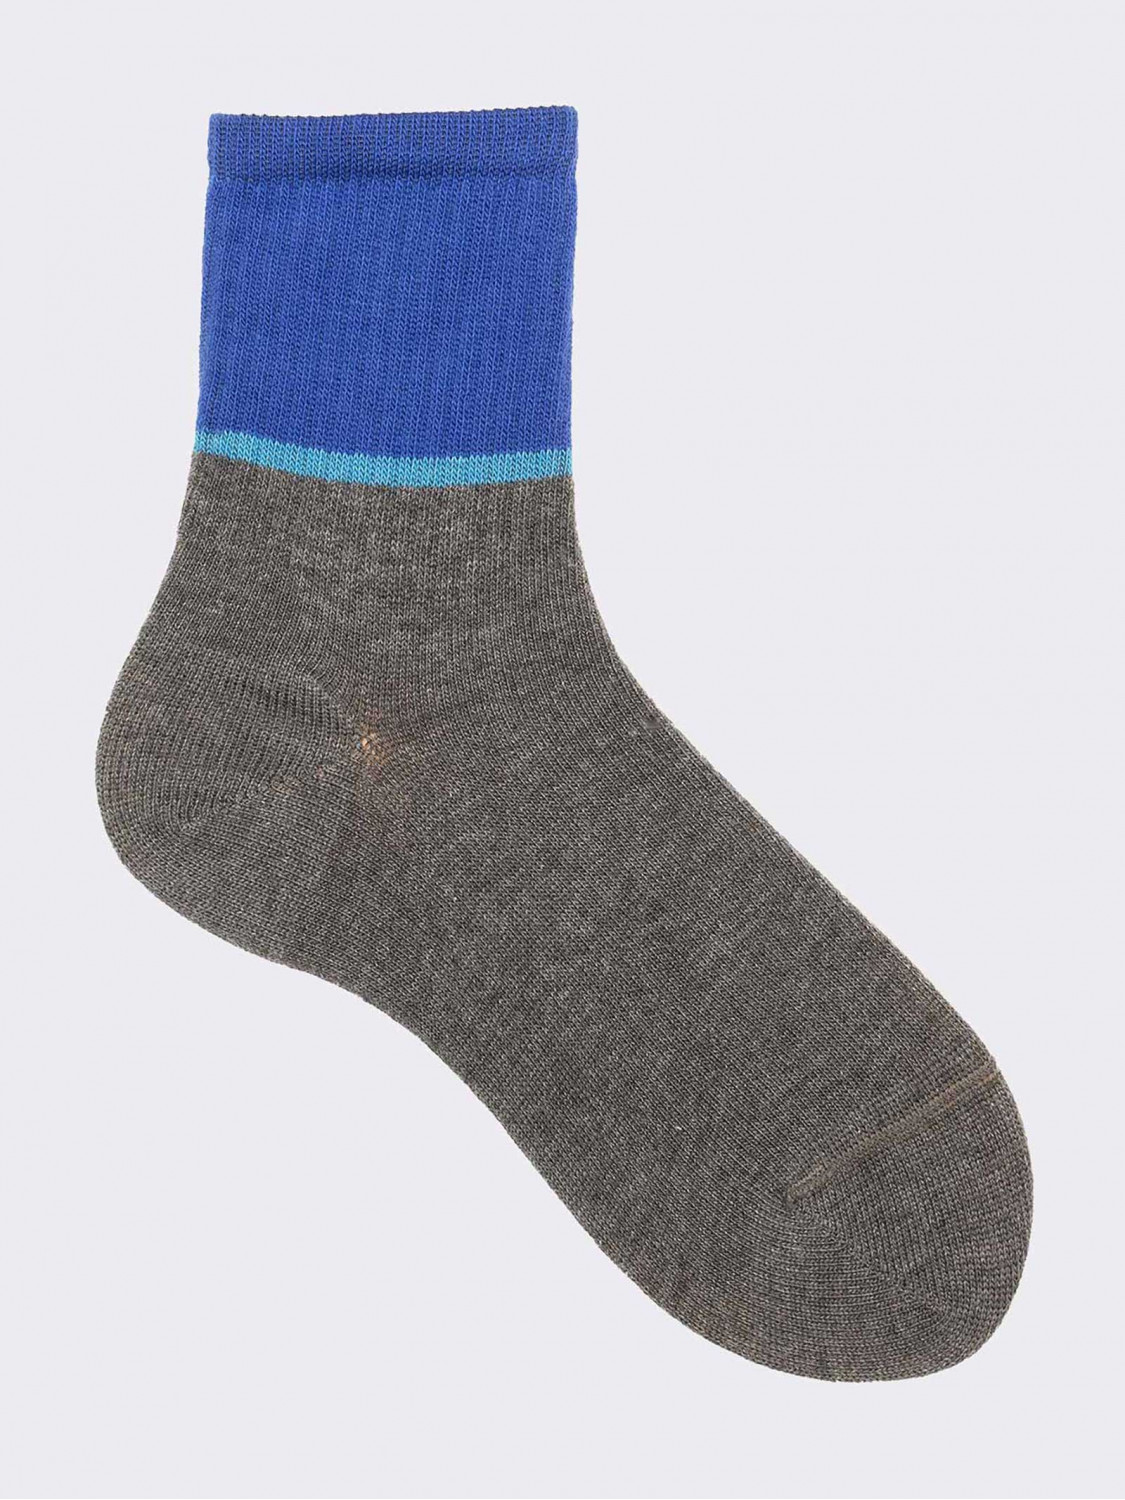 Kurze zweifarbige Kinder-Socken aus warmer Baumwolle